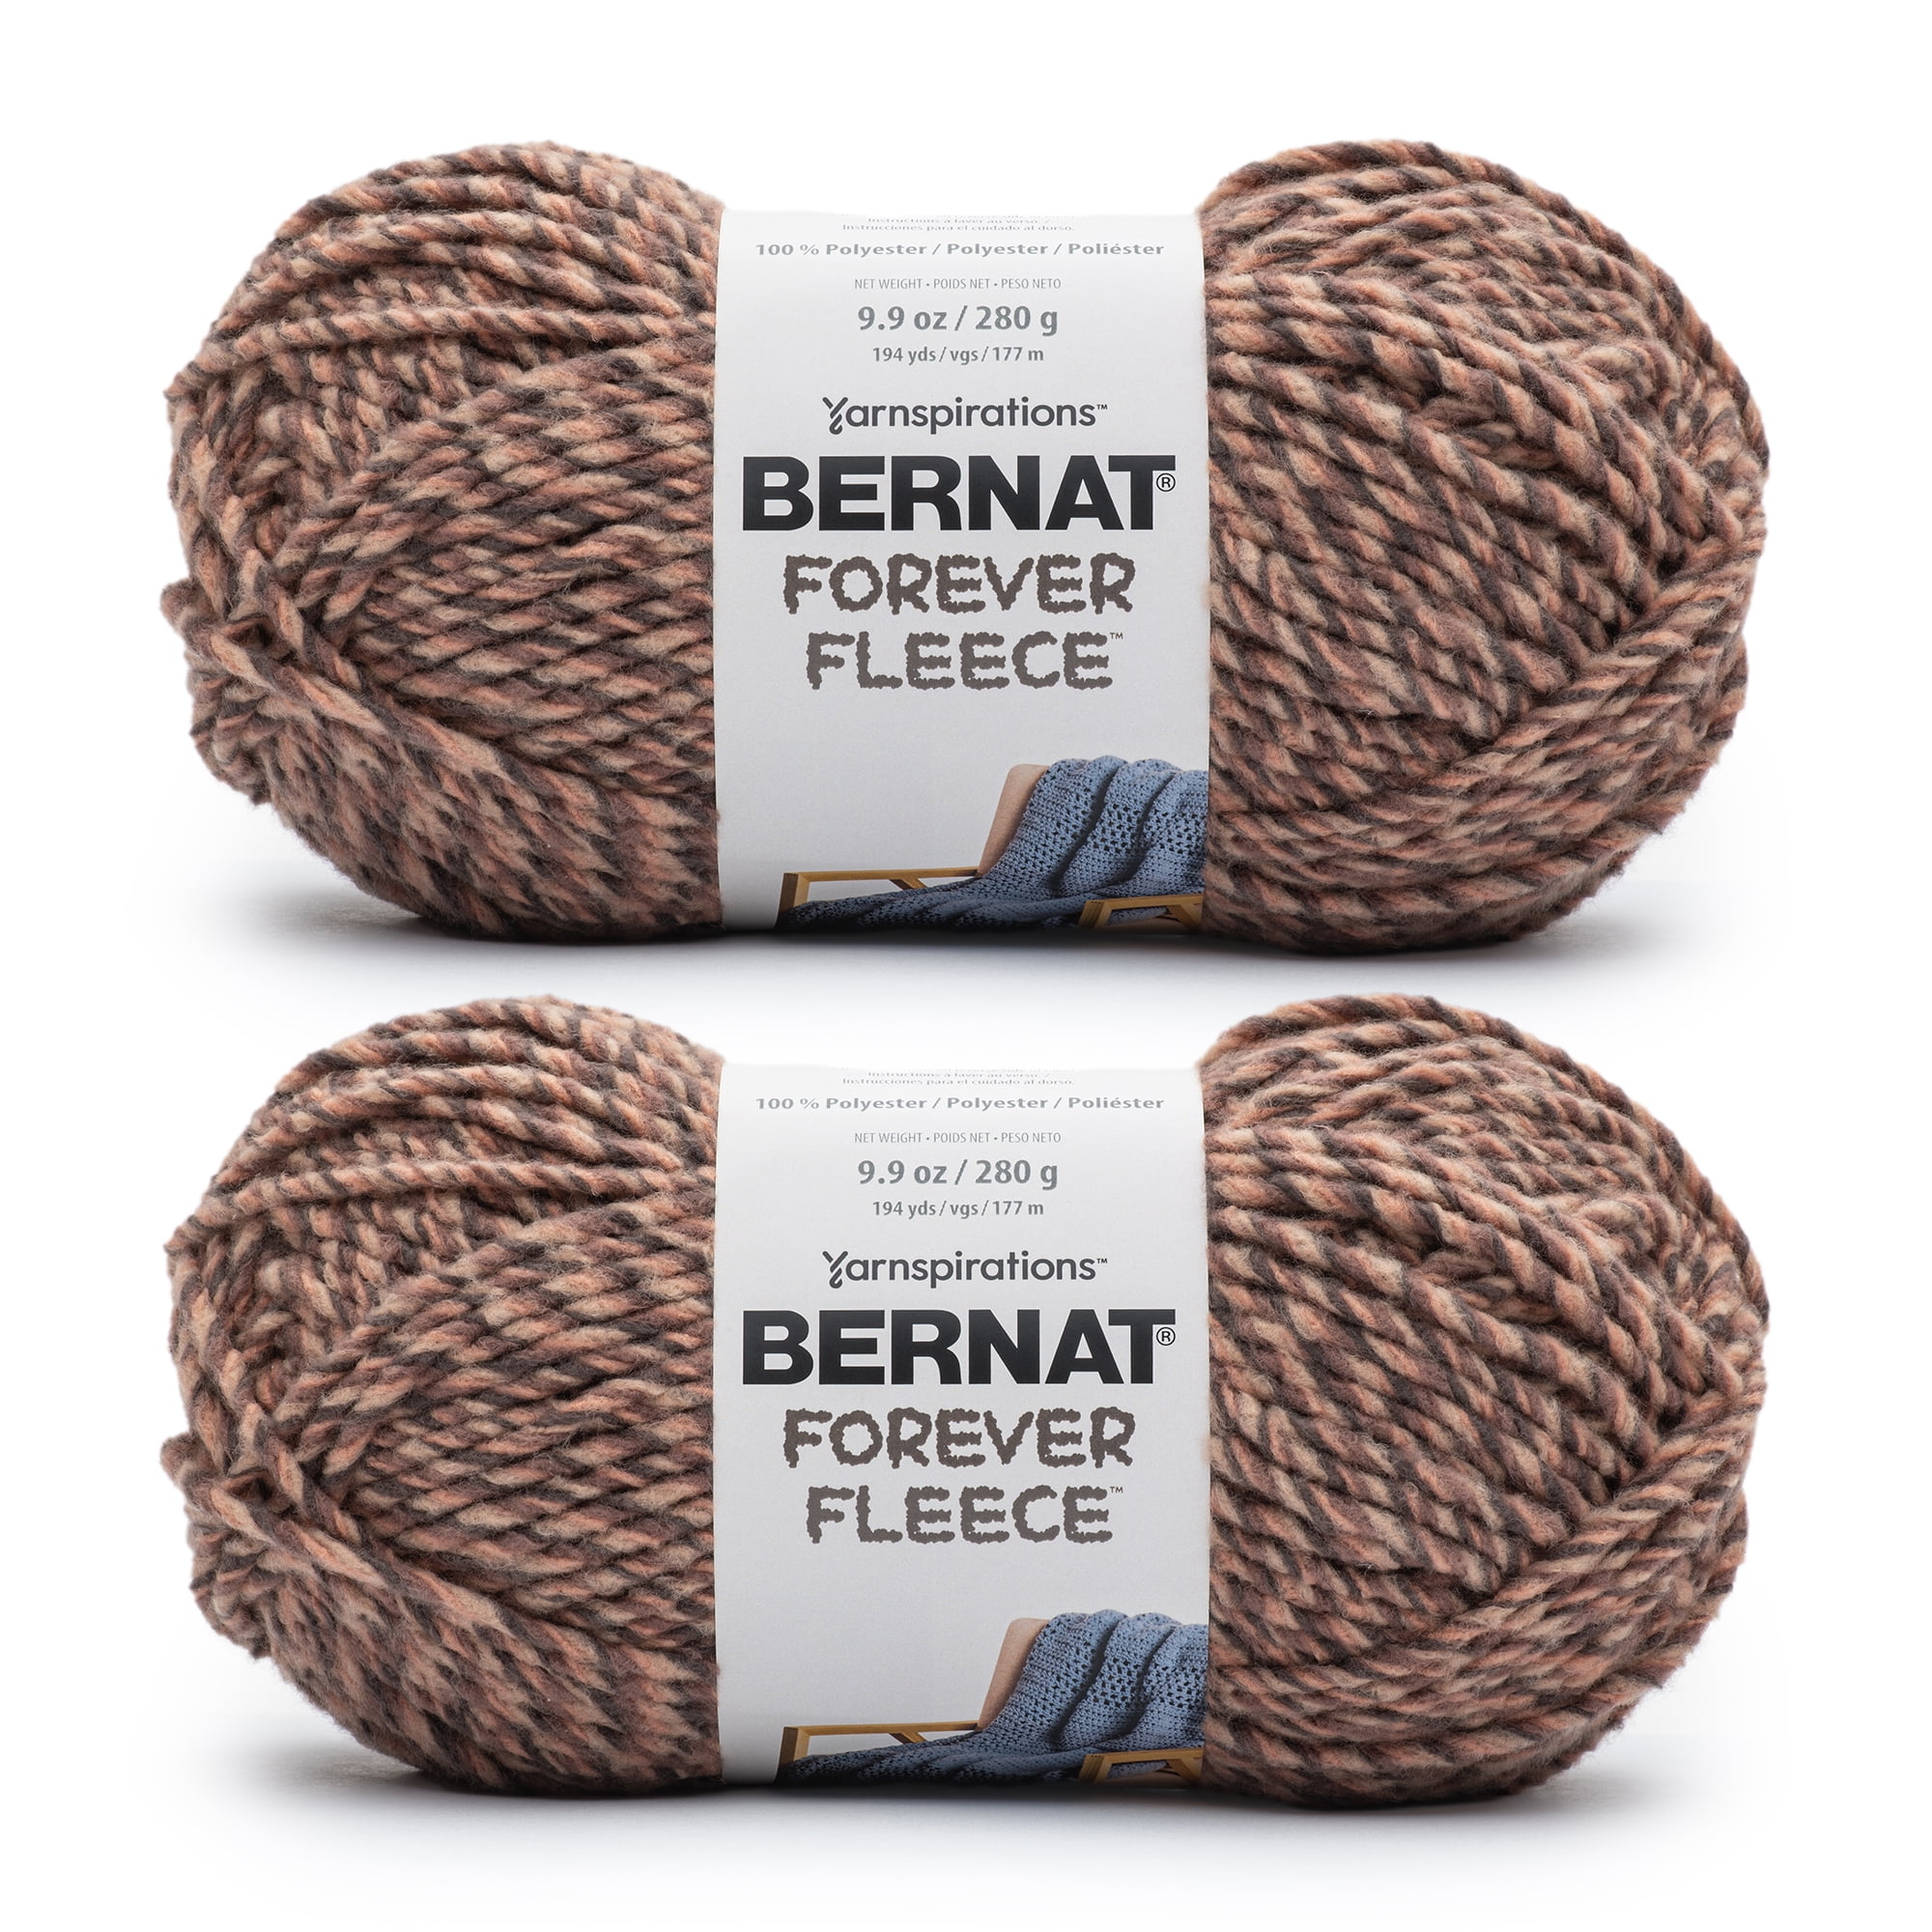 Bernat Forever Fleece Jasmine Yarn - 2 Pack of 280g/9.9oz